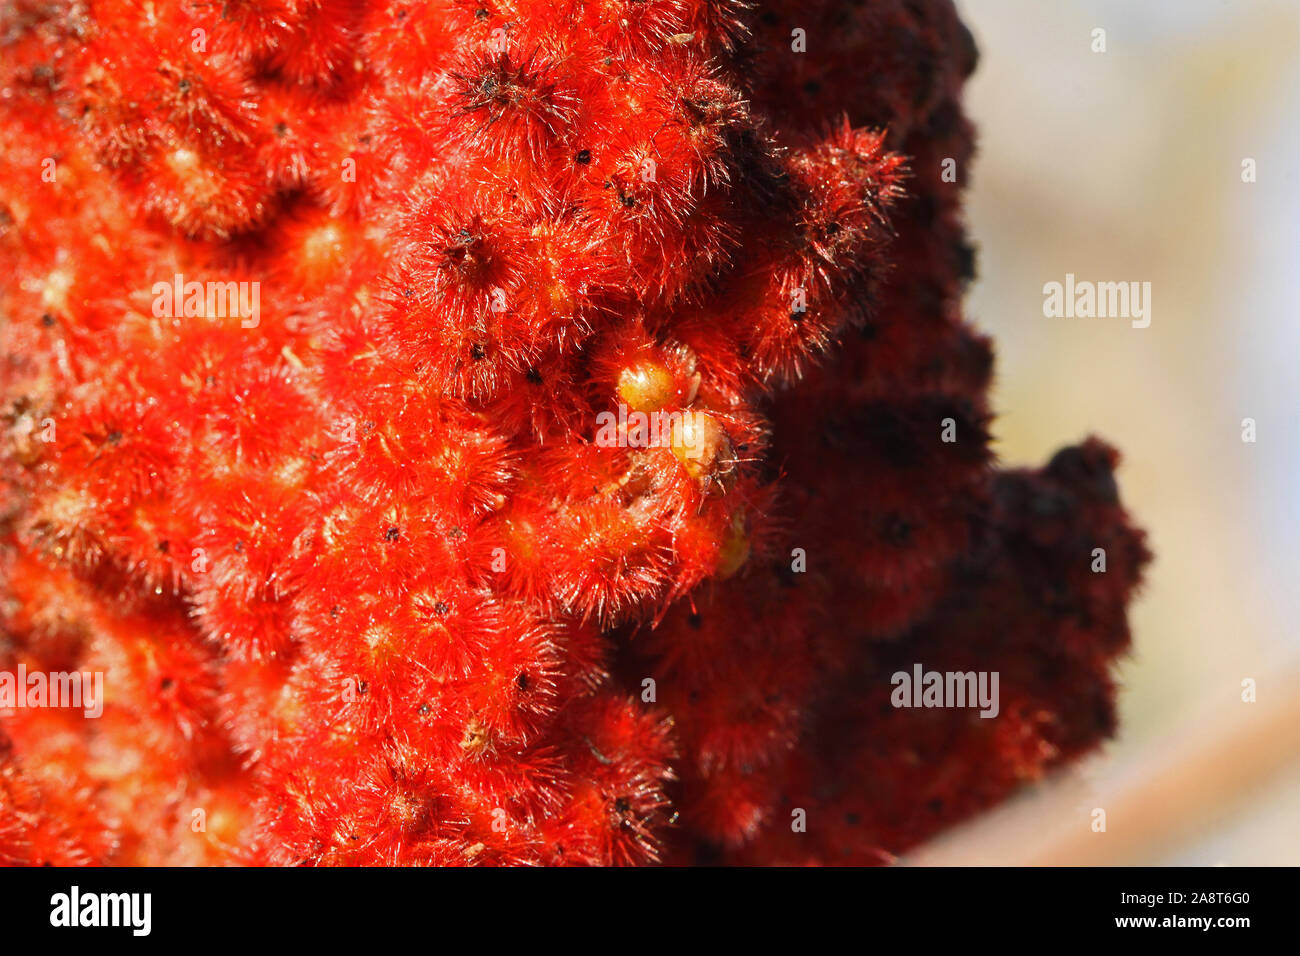 Rosso brillante o rhus sumac sumach seme su un maturo panicle chiamato anche staghorn coriaria o typhina dall'anacardiaceae o anacardi famiglia di piante Foto Stock